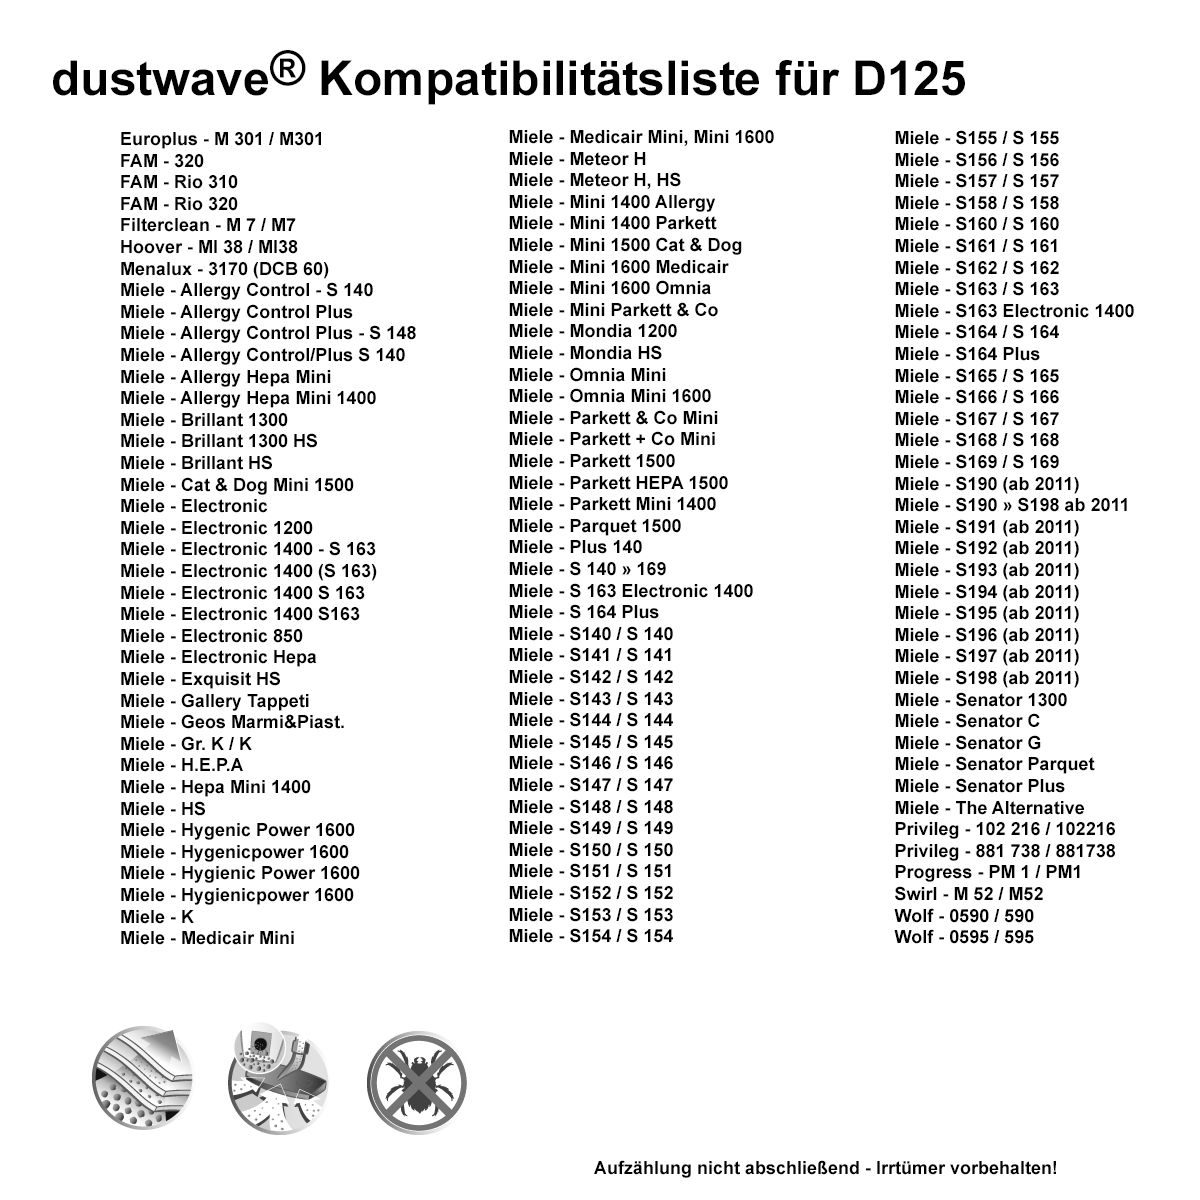 Dustwave® 5 Staubsaugerbeutel für Miele Allergy Control Plus S148 - hocheffizient, mehrlagiges Mikrovlies mit Hygieneverschluss - Made in Germany